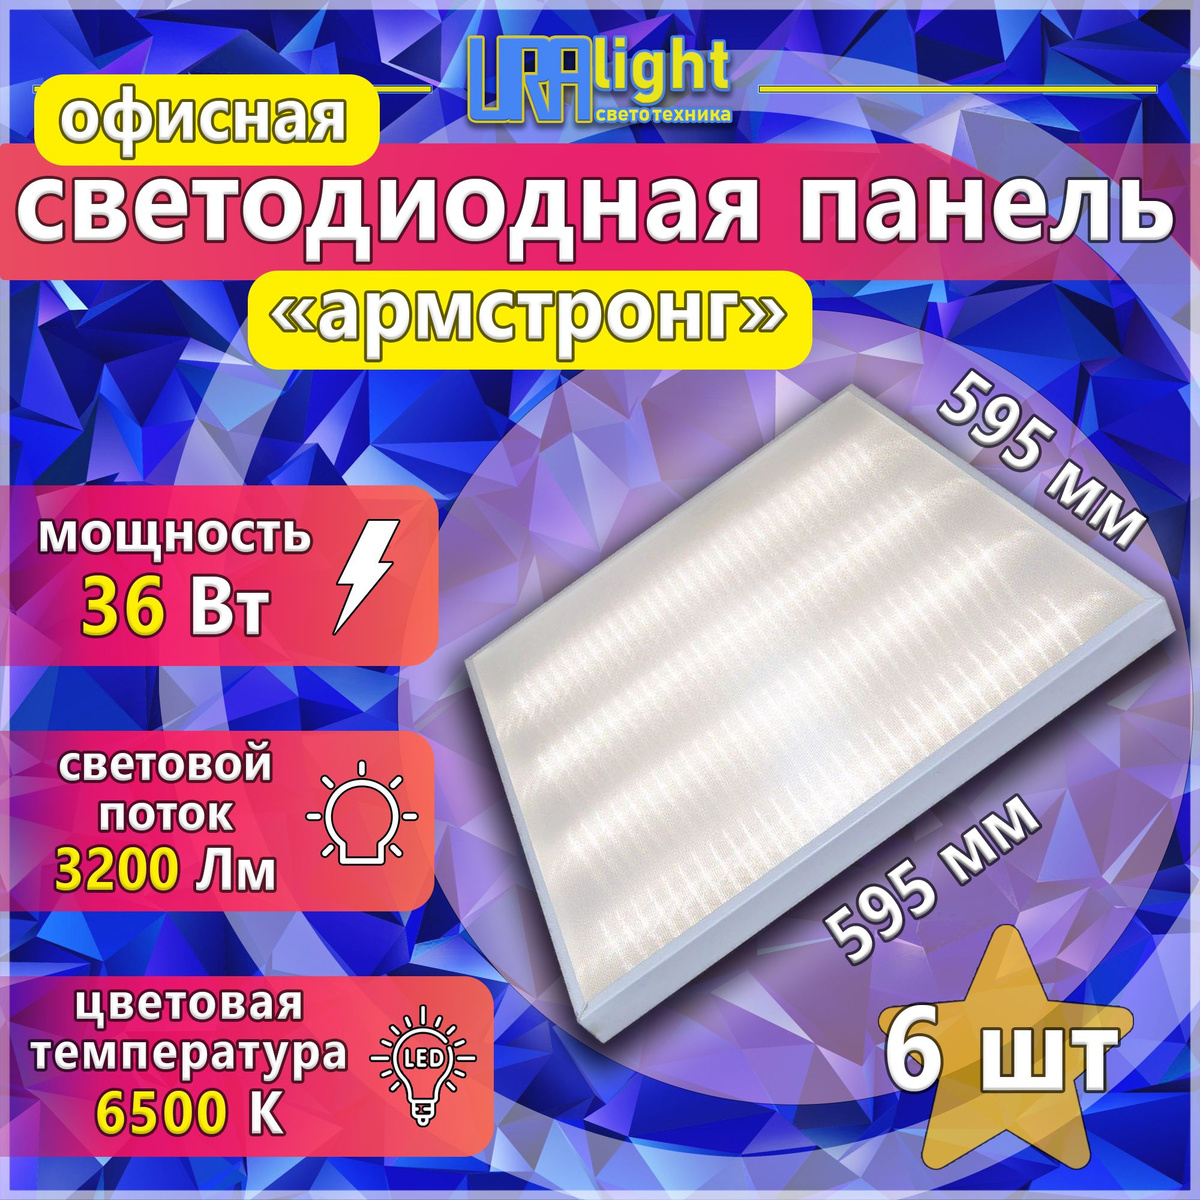 Универсальная офисная светодиодная панель Армстронг SPU-36-PRIZM-URAlight имеет 4 светодиодные линейки и комфортную цветовую температуру (6500К, яркое дневное освещение, световой поток 3200Лм). Мягкий рассеянный свет мощностью 36Вт придаст помещению комфорт. Потолочный светодиодный светильник типа Армстронг изготовлен из современных, высококачественных и безопасных материалов, что позволяет использовать его панели в качестве основного освещения в жилых, административных, учебных, торговых помещениях, проходных зонах, общественных местах, заведениях общественного питания и других аналогичных условиях.  Преимущества использования:  • 4 светодиодных линейки;  • мощность 36Вт;  • световой поток 3200Лм;  • цветовая температура 6500К;  • размеры 595х595х19мм;  • подключение к 220V напрямую;  • имеет вывод провода;  • крепление подвесным и накладным способом;  • современные и качественные светодиоды;  • прочные и надежные материалы сборки корпуса;  • долгий срок службы.  Этот товар также ищут по данному запросу: офисный потолочный светильник, точечный светильник, светильник потолочный встраиваемый, светильник встраиваемый потолочный, точечные светильники, встраиваемые светильники для потолков, светильник потолочный встраиваемый светодиодный